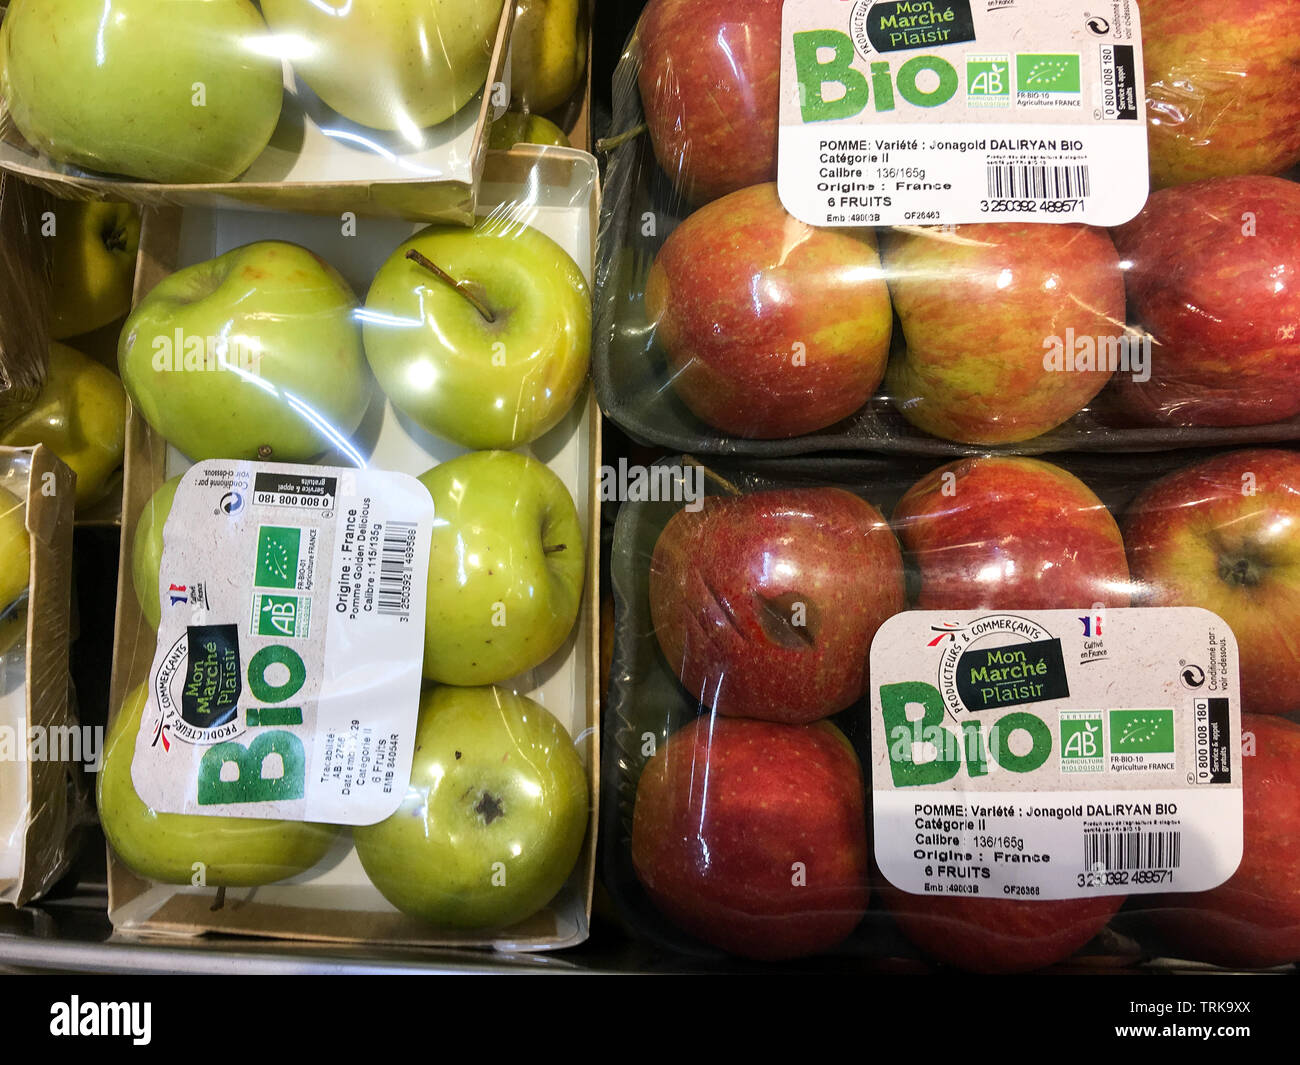 Organic apples packaged in plastic blister packs, France Stock Photo